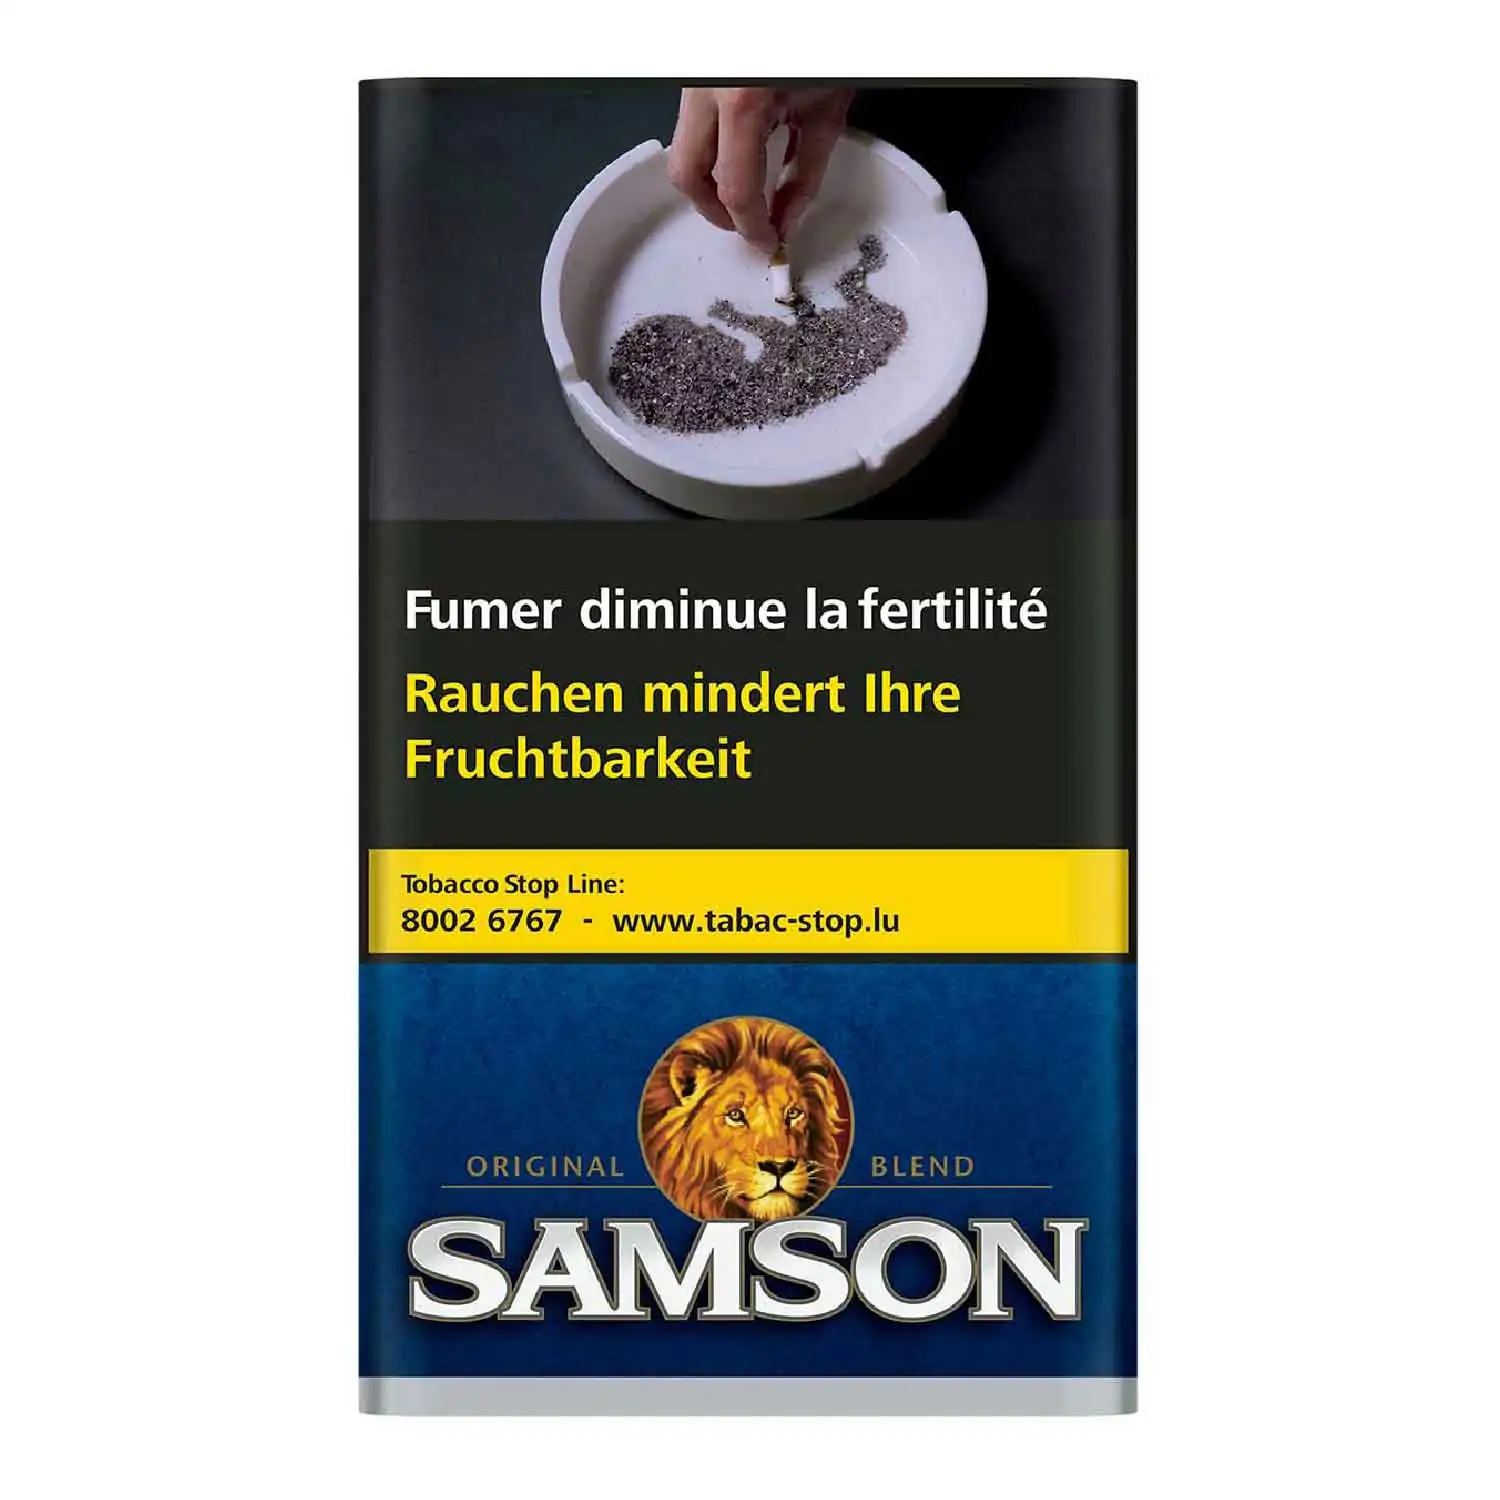 Samson 50g - Buy at Real Tobacco